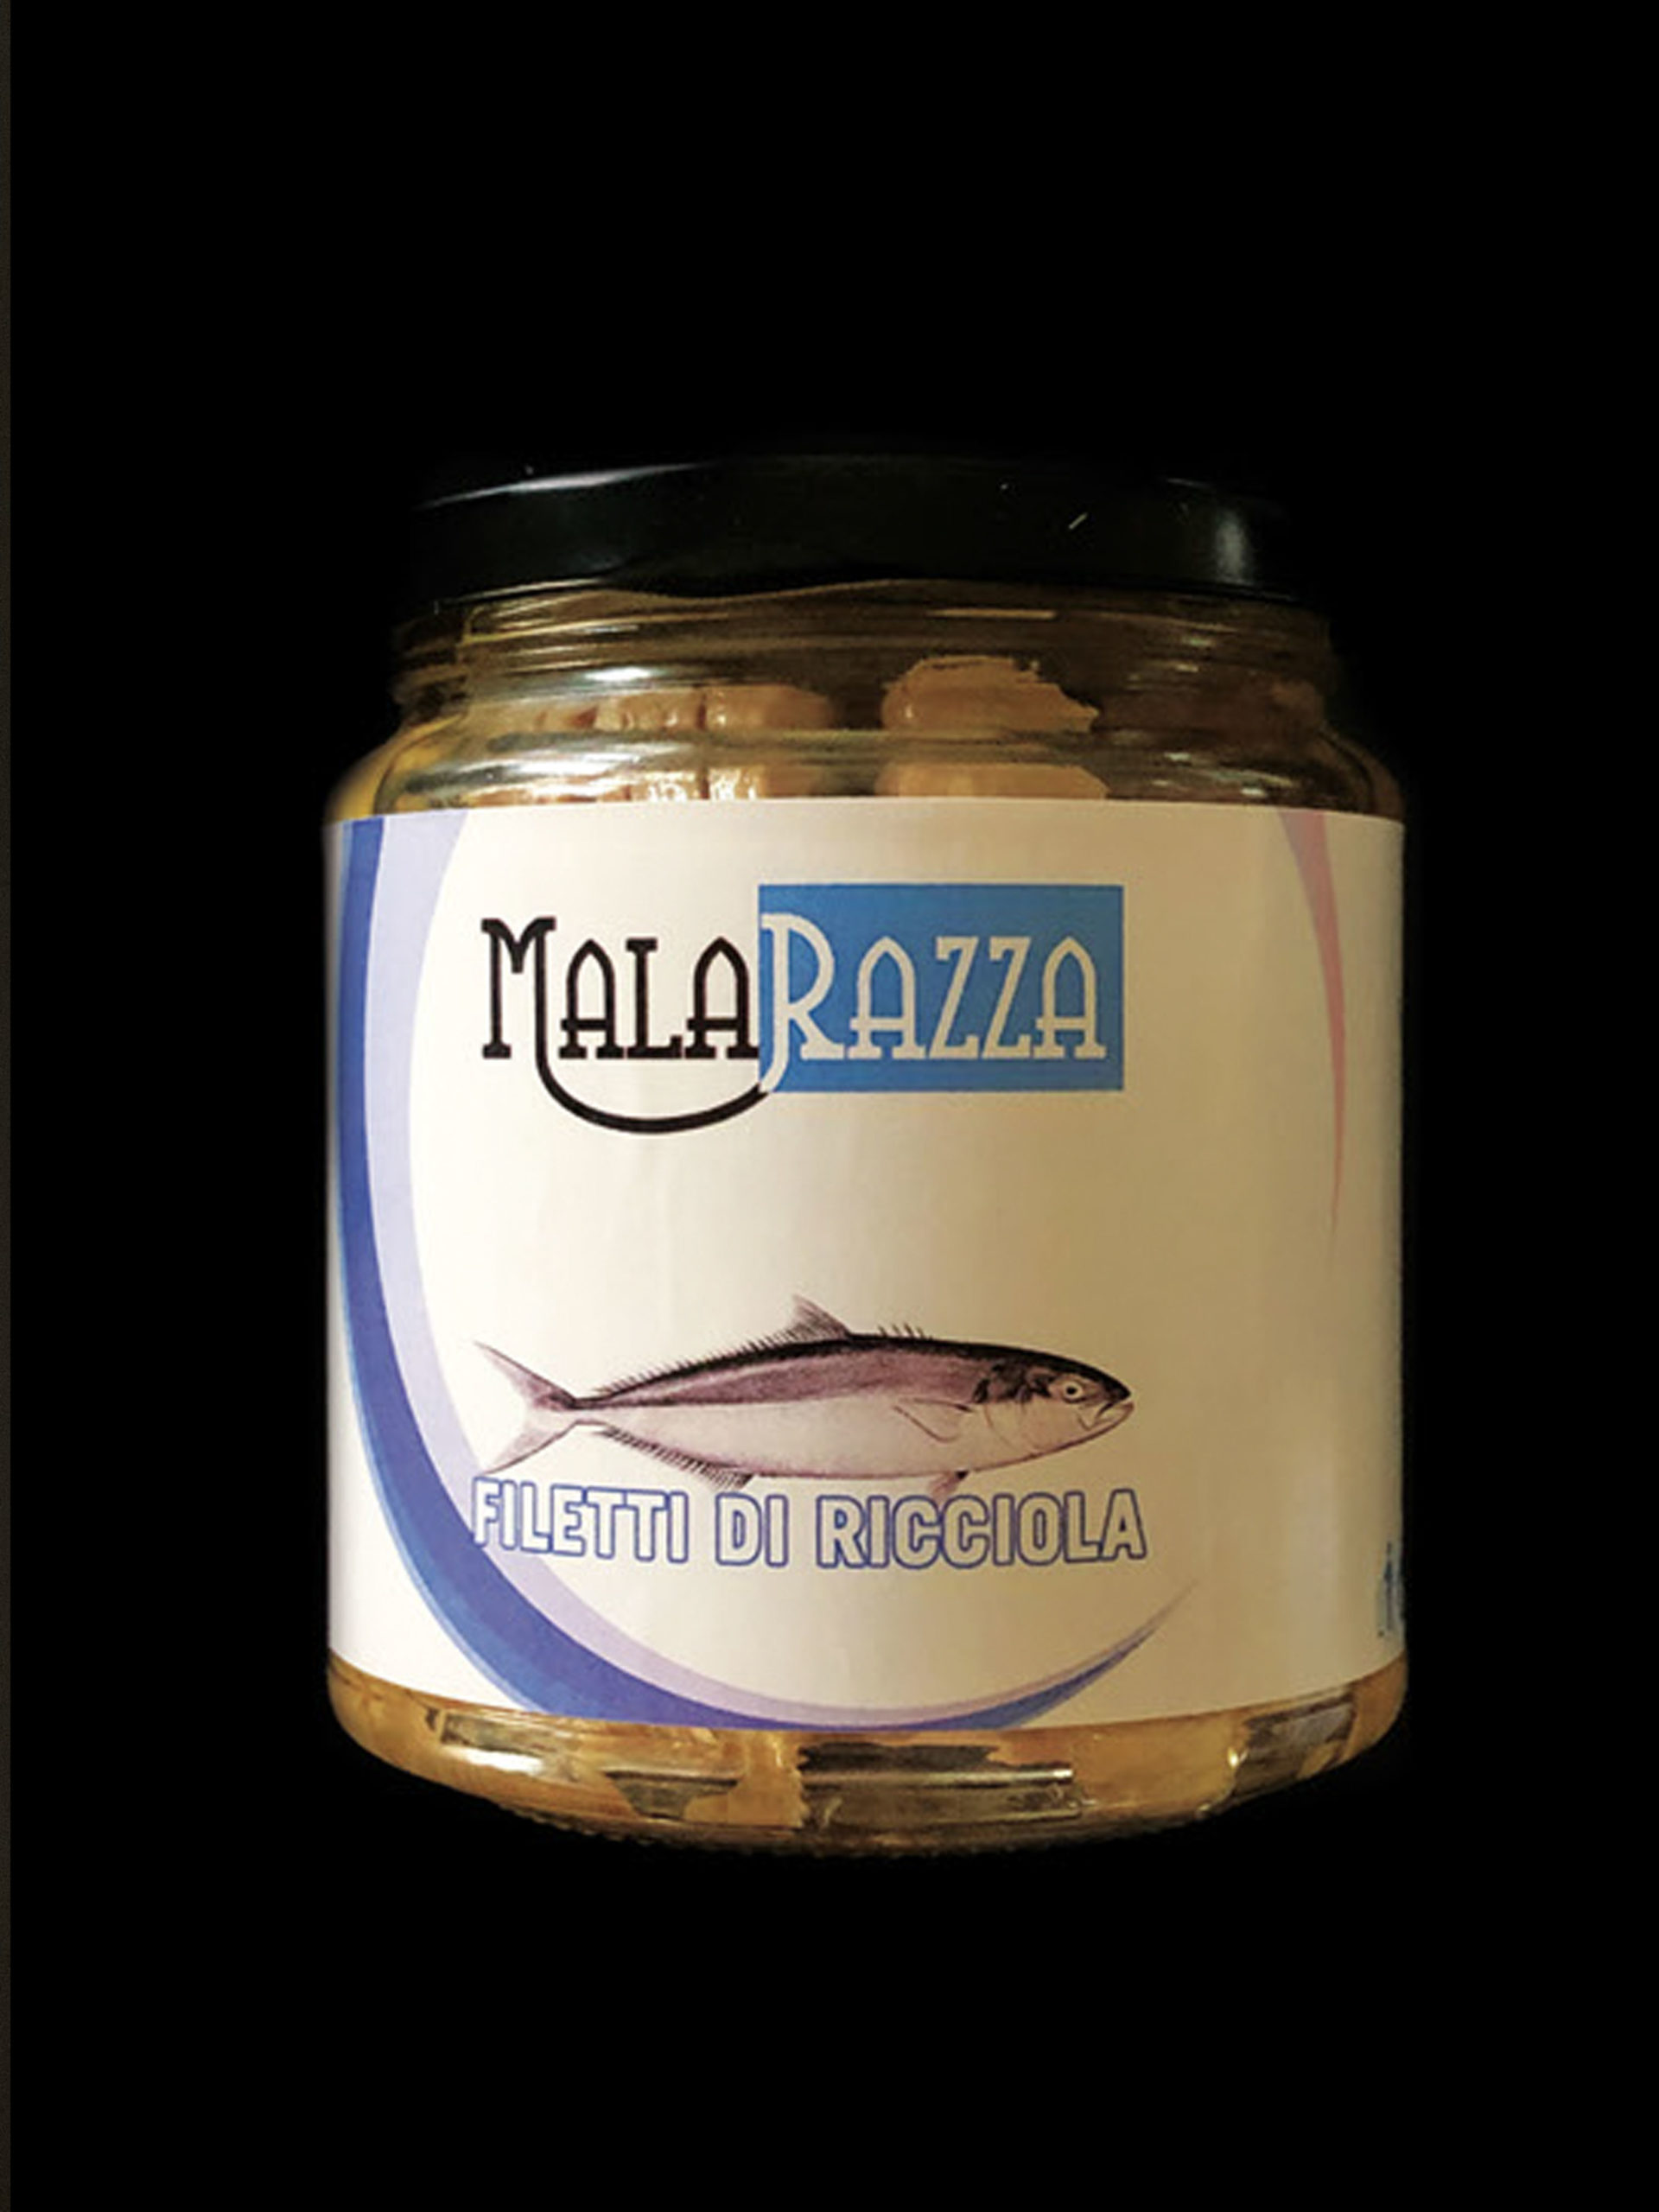 malarazza food made in italy filetti-di-ricciola